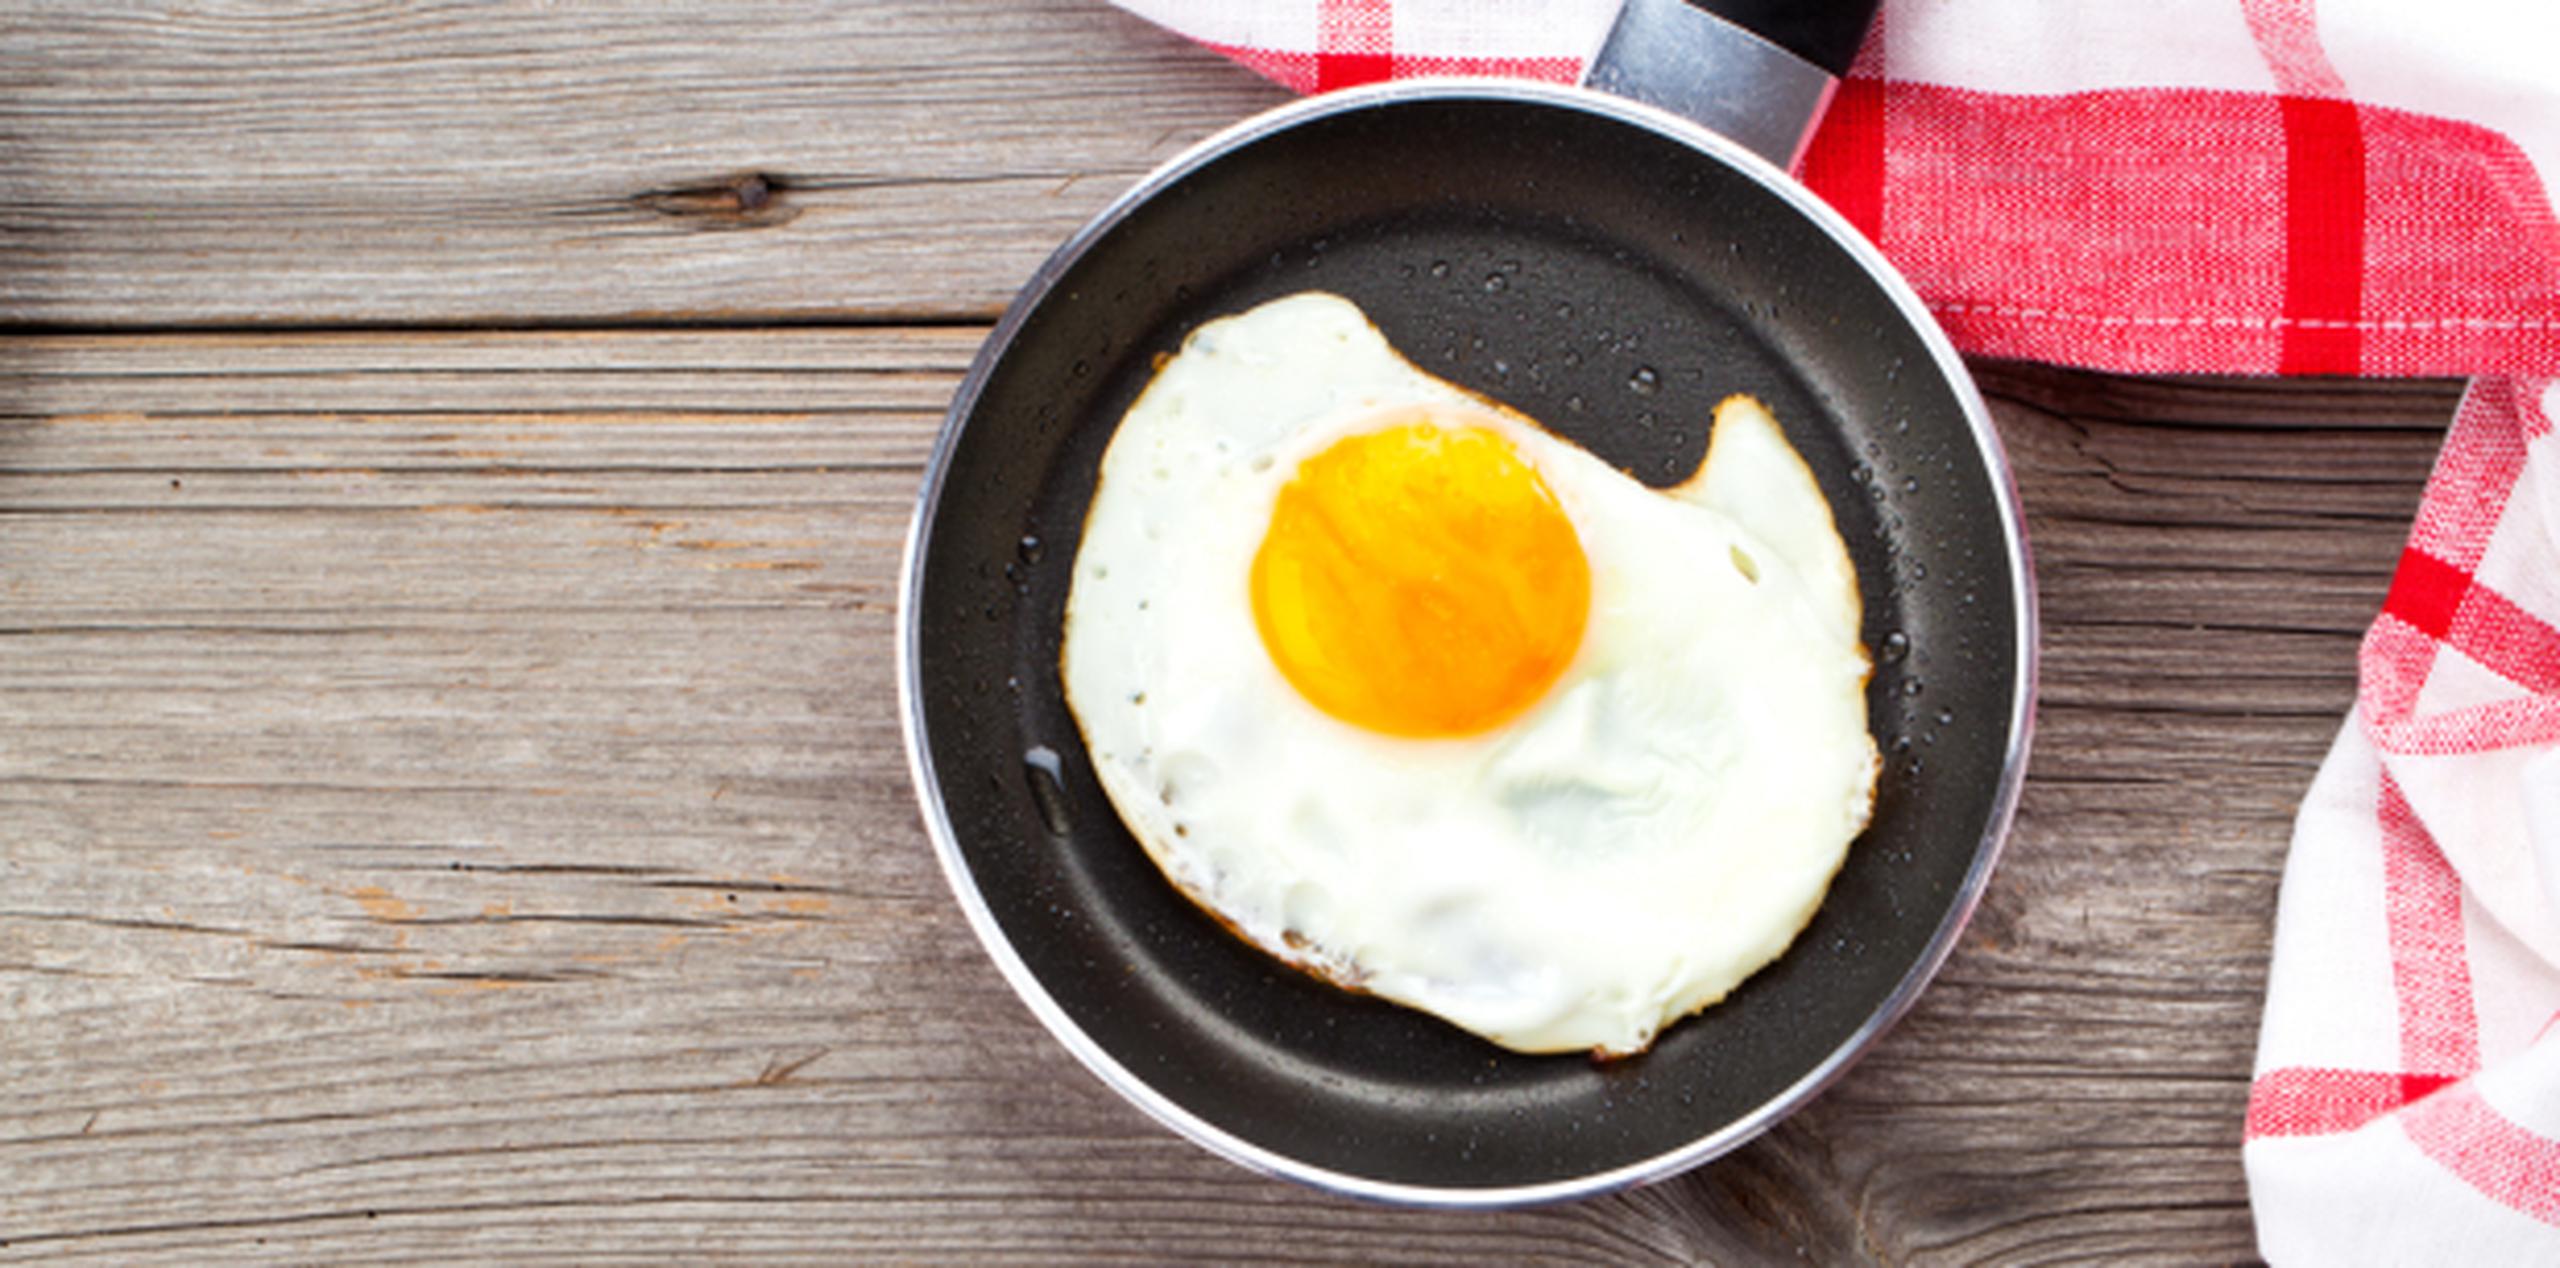 Desayunar garantiza productividad y bienestar físico. (Shutterstock)